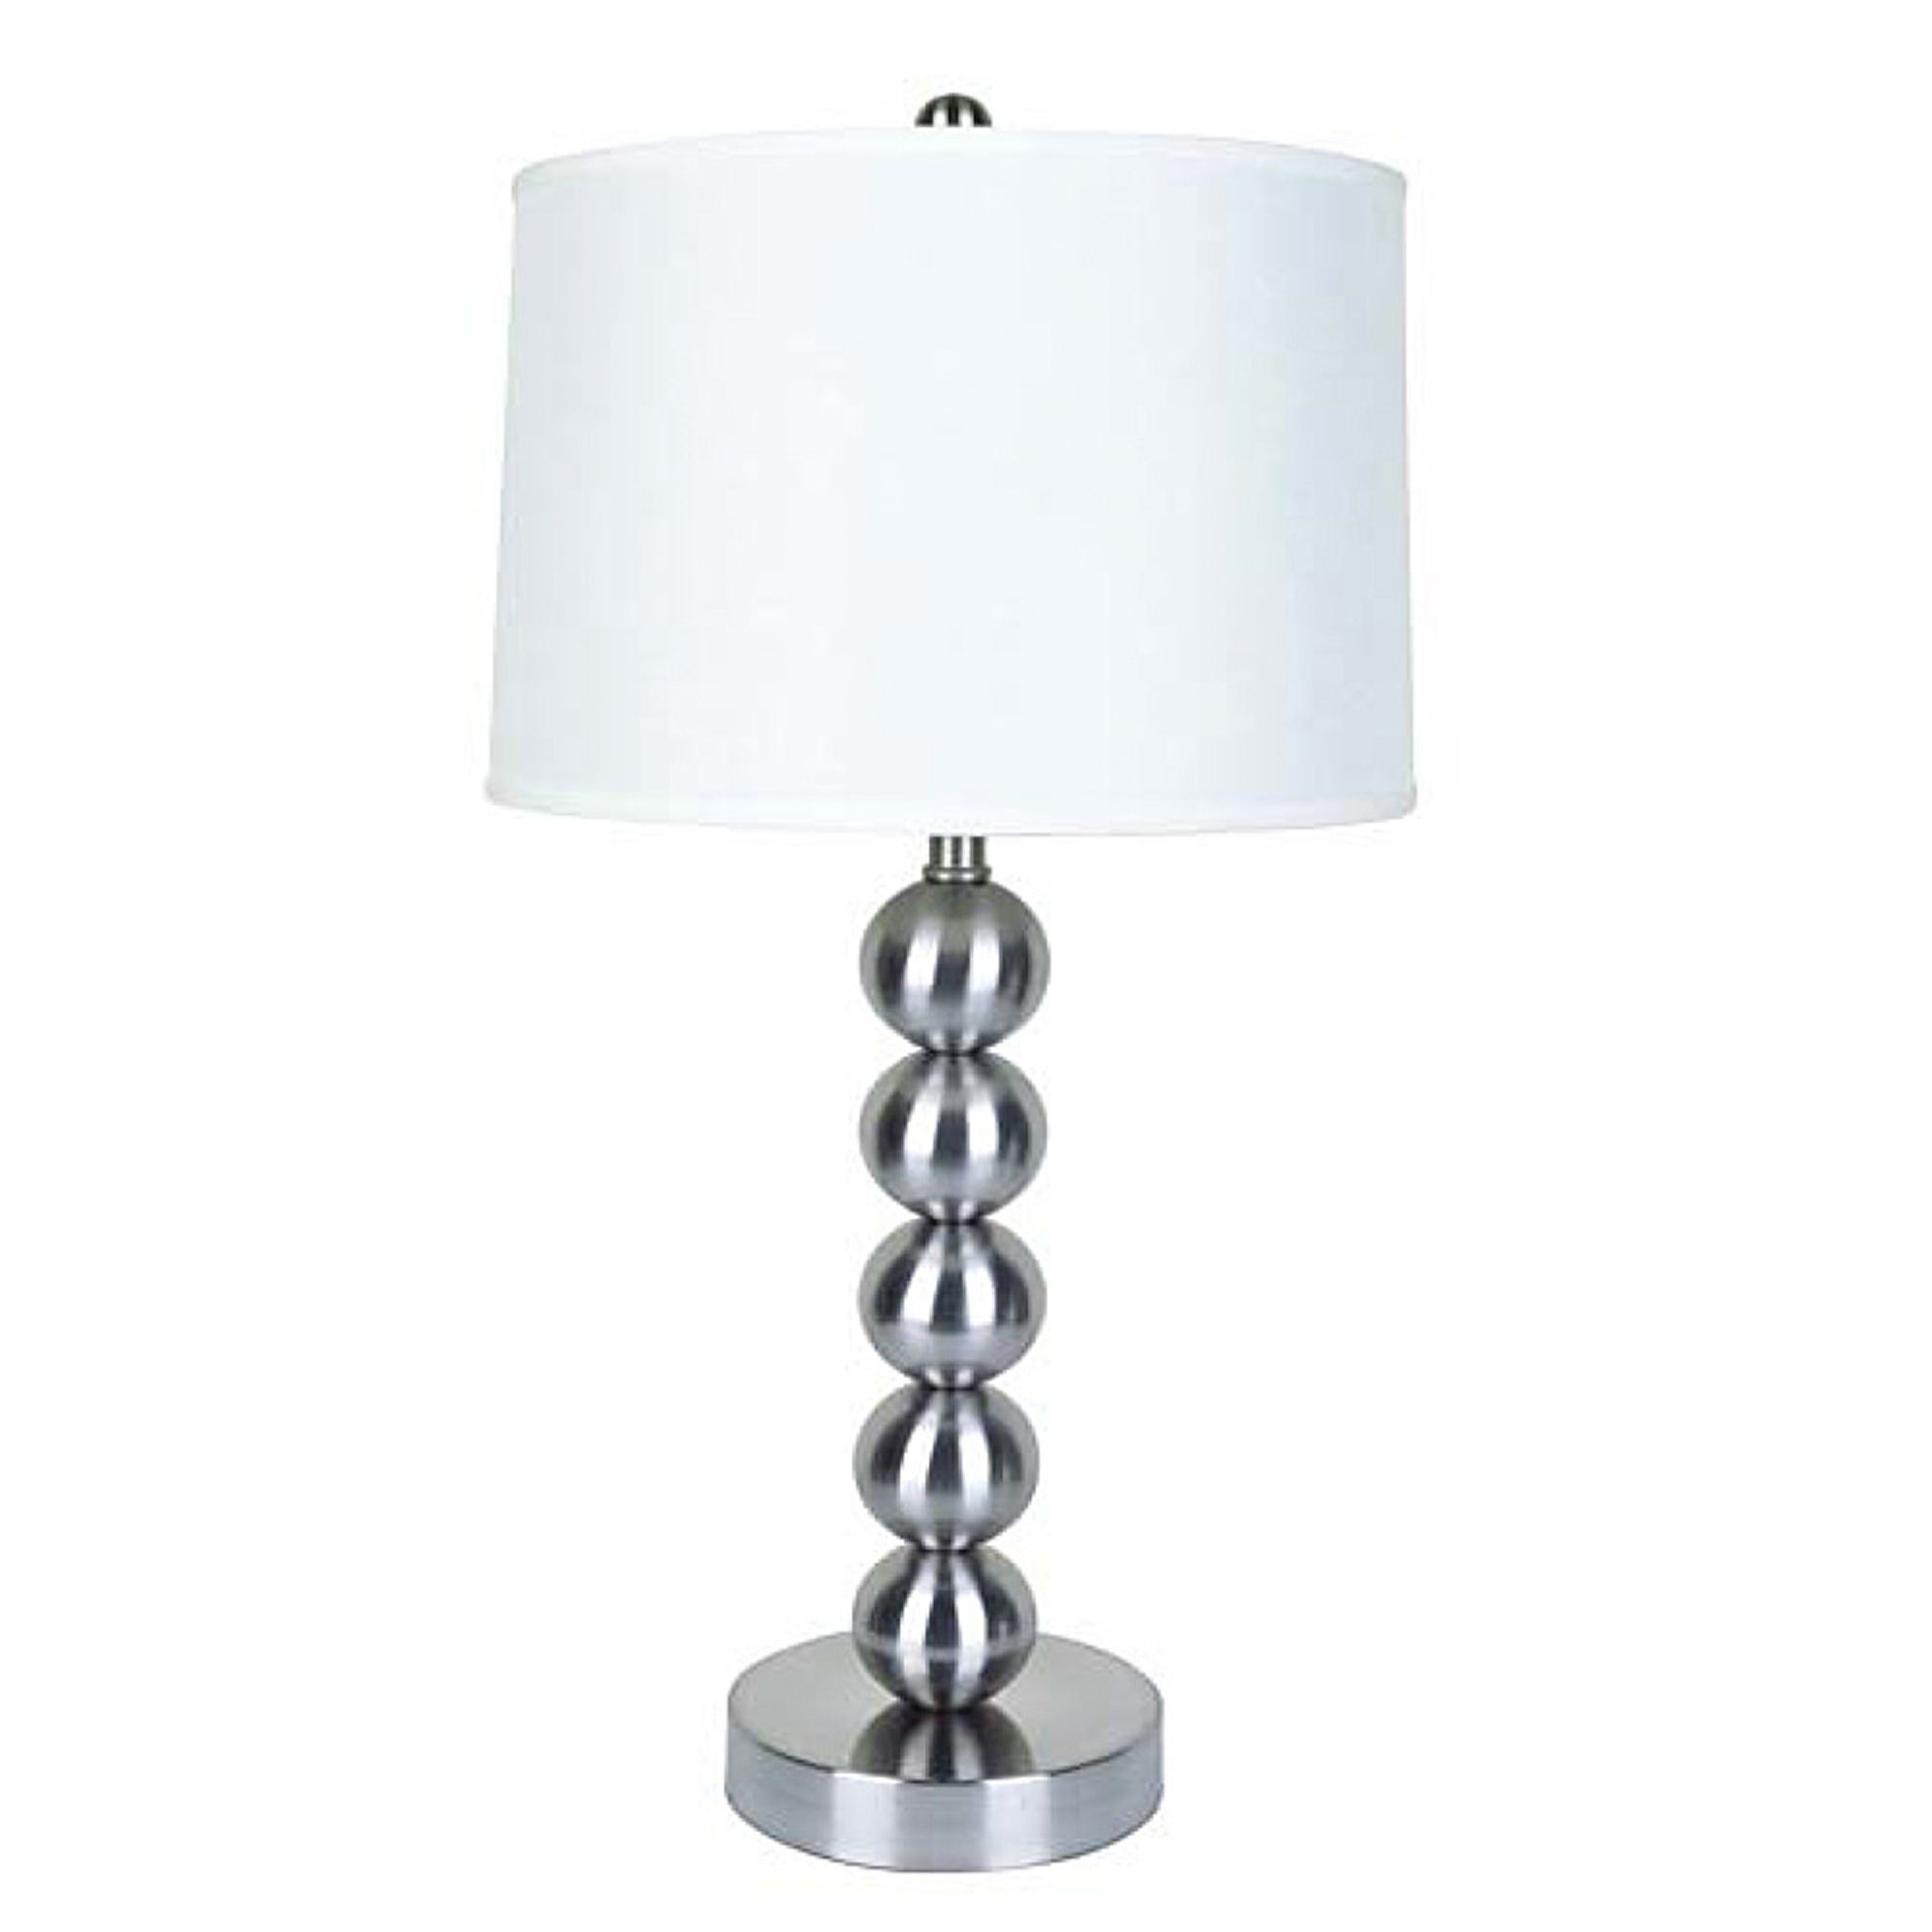 Ore 29" Metal Table Lamp - Satin Nickel